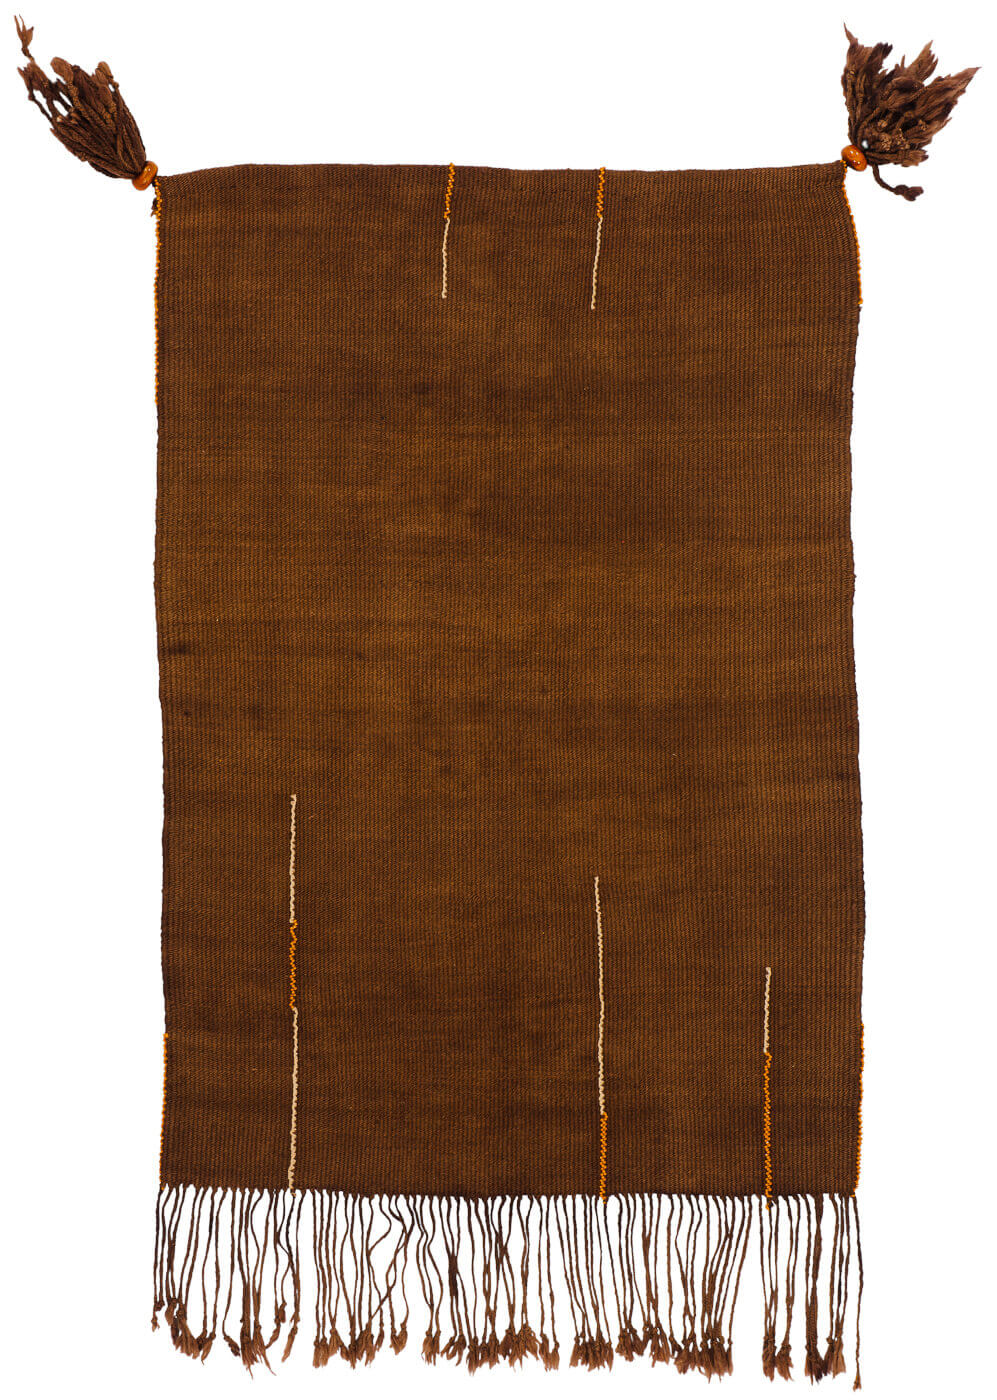 Hand-Woven Tribal Brown Rug